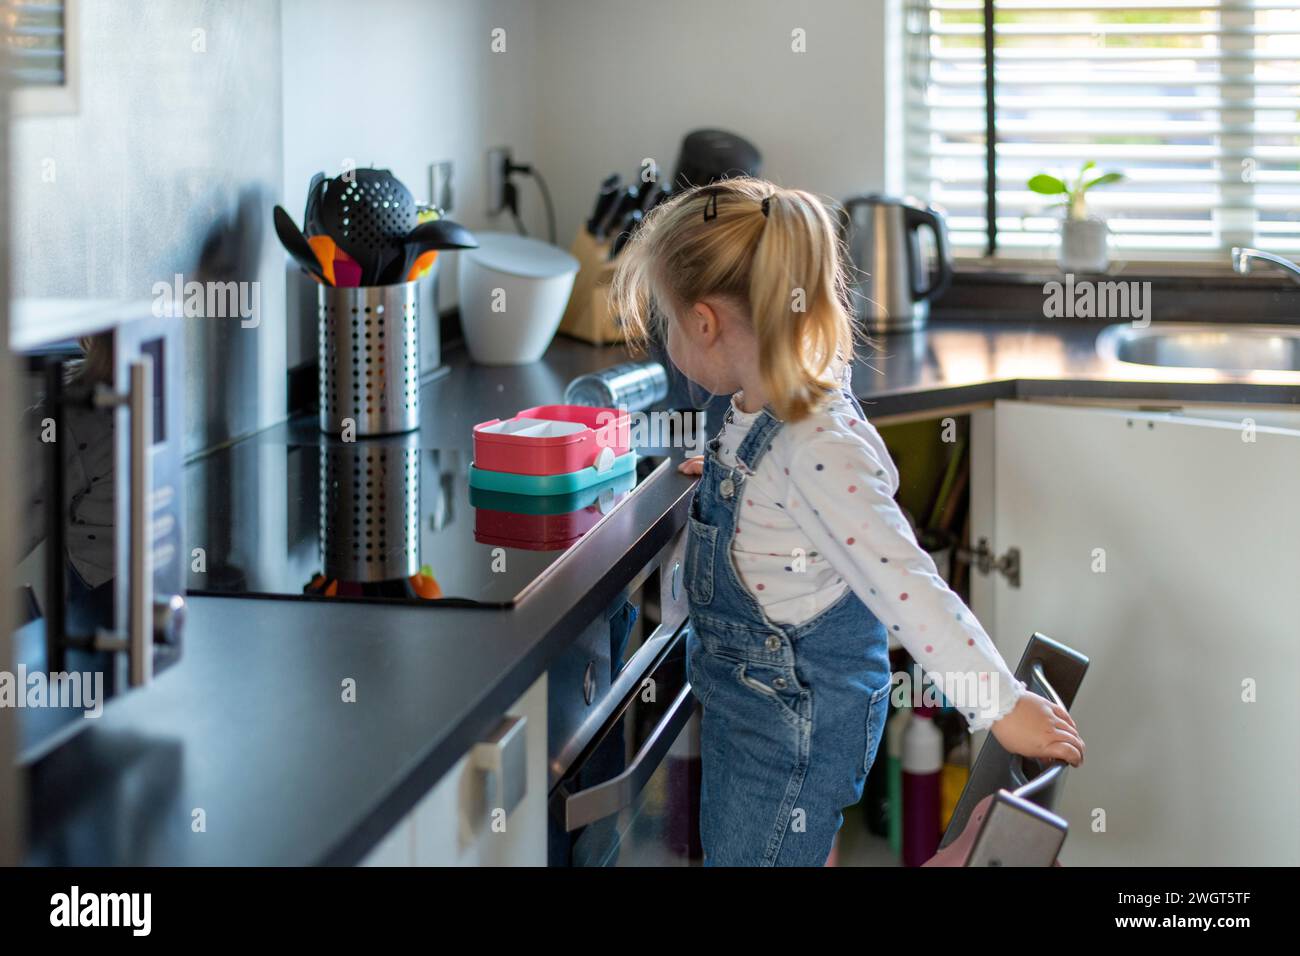 Bambina bionda in piedi su una sedia in cucina in attesa che sua madre le insegnasse come cucinare Foto Stock